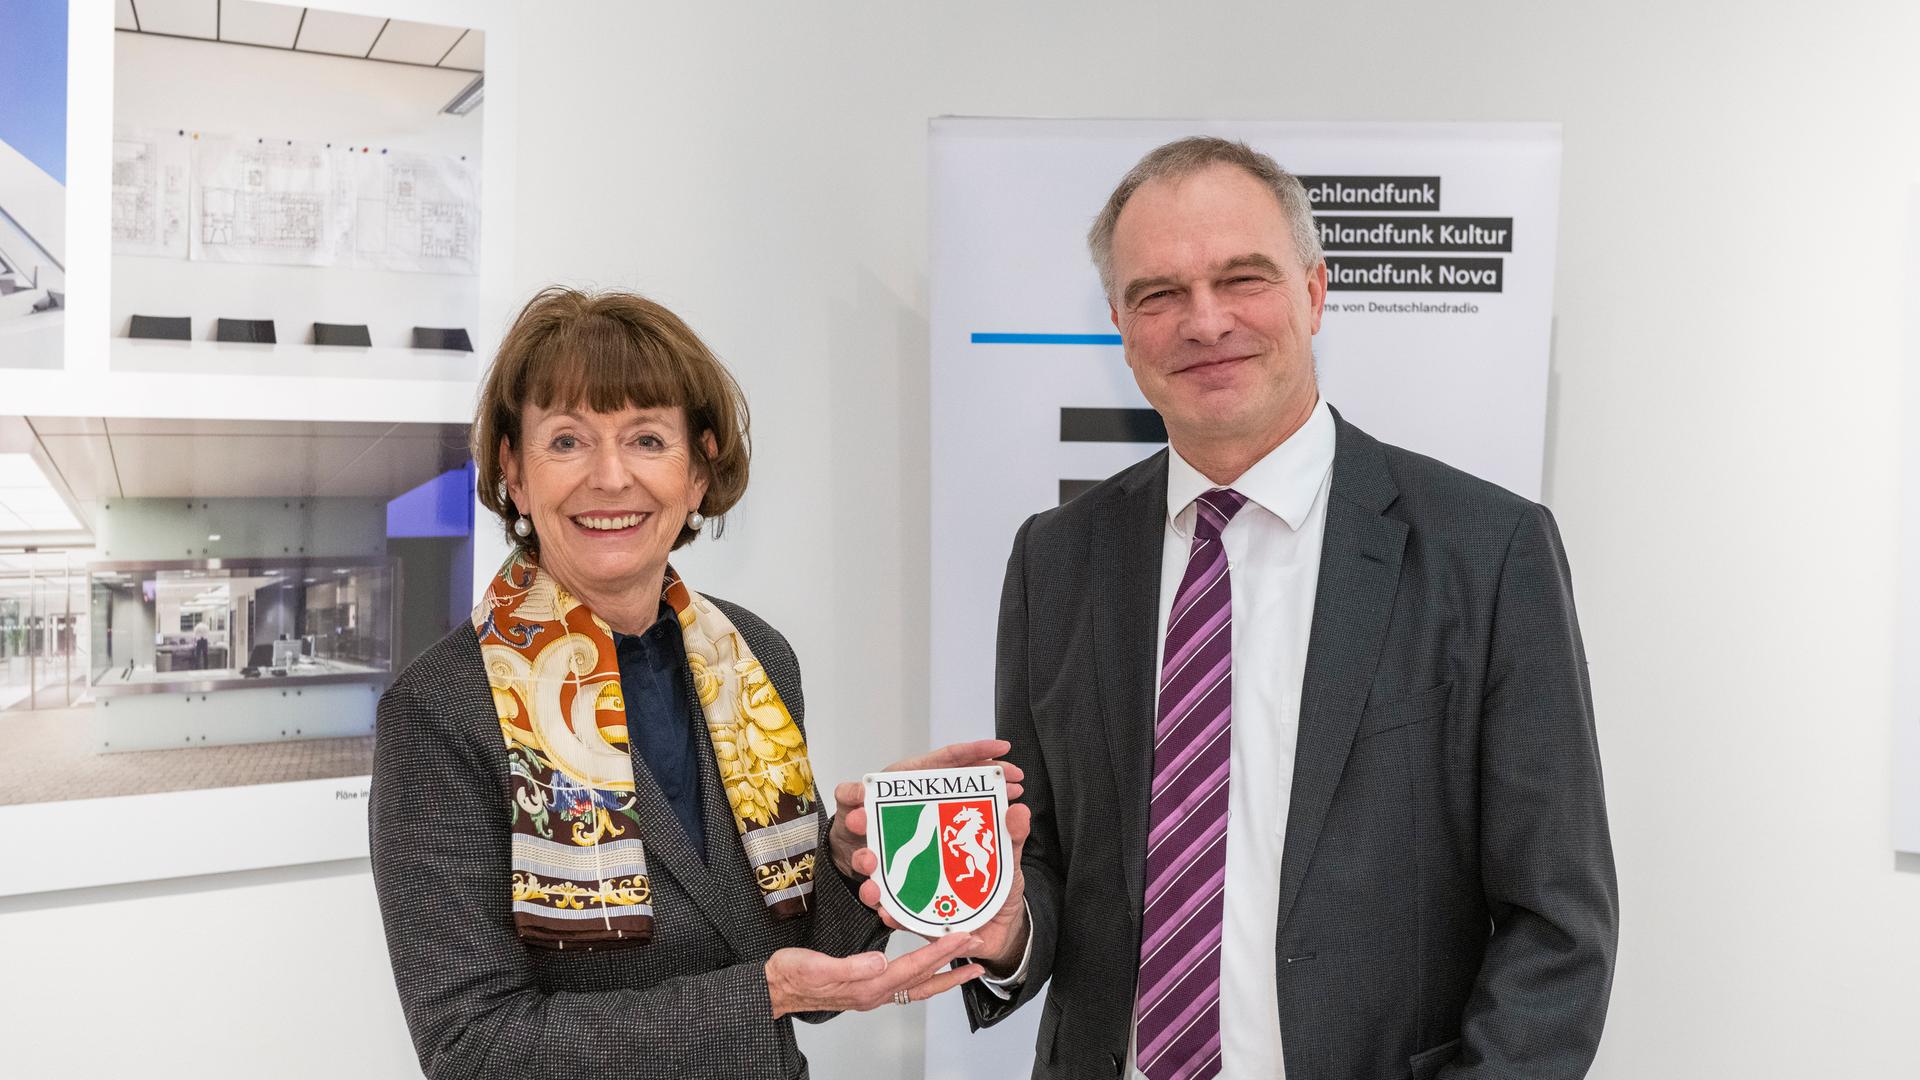 Die Oberbürgermeisterin Henriette Reker und Deutschlandradio-Intendant Stefan Raue halten gemeinsam die NRW-Plakette für den Denkmalschutz des Deutschlandfunk-Gebäudes. 